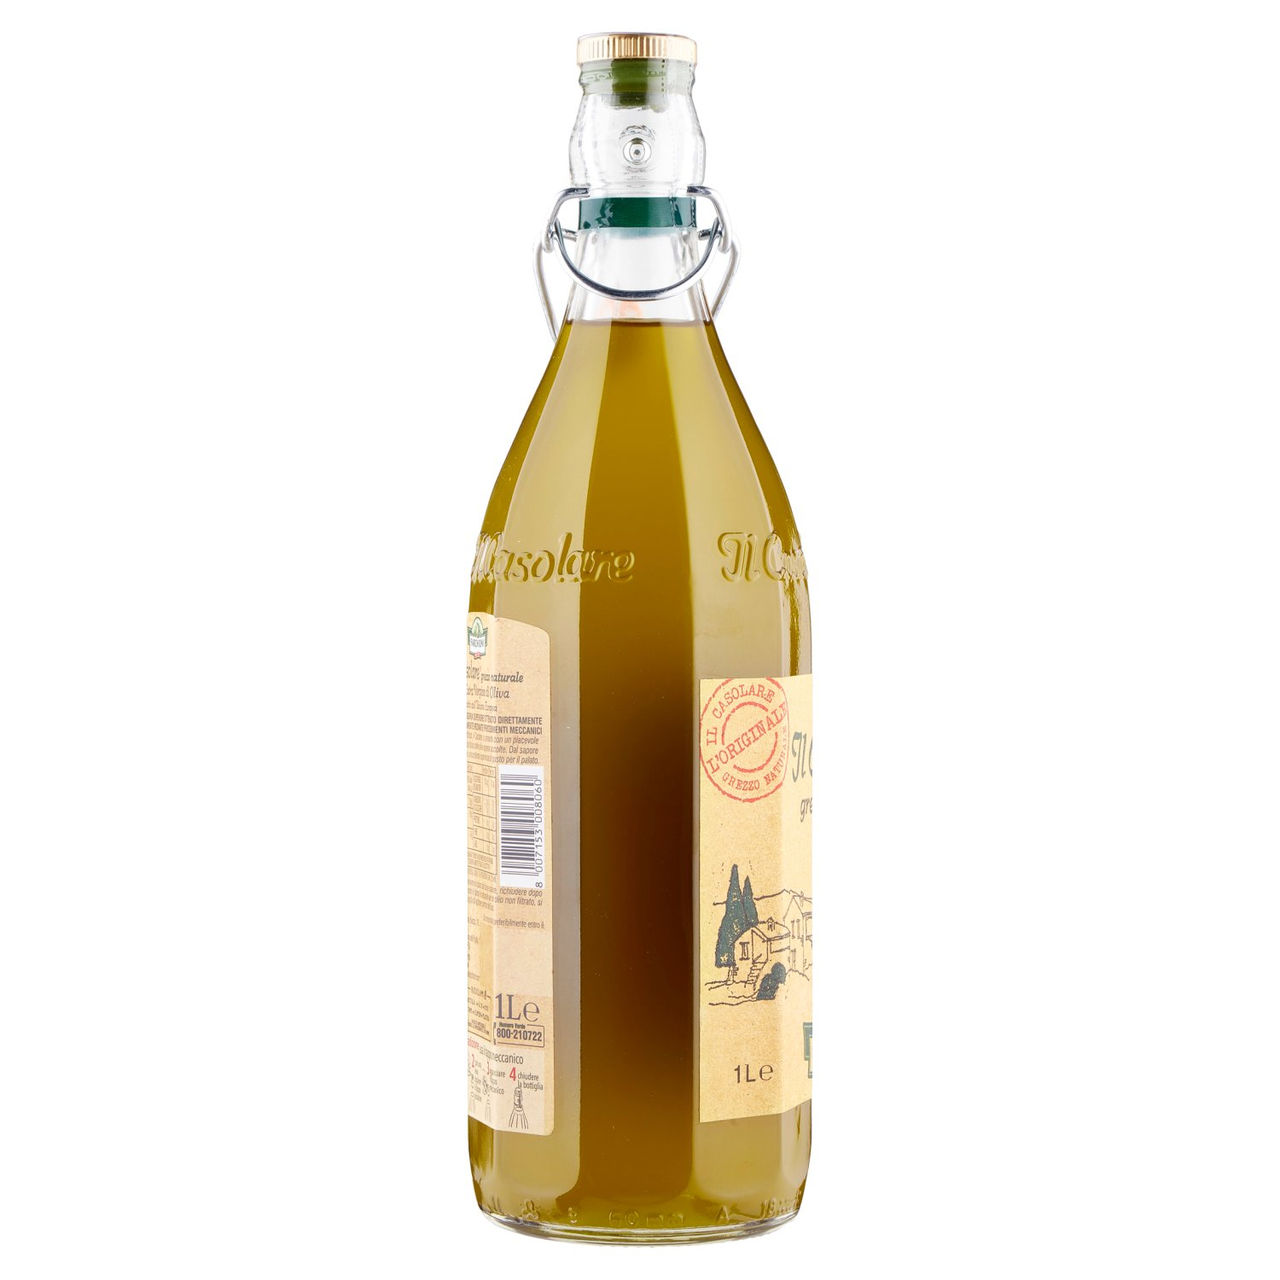 Farchioni Il Casolare olio extra vergine 1 L